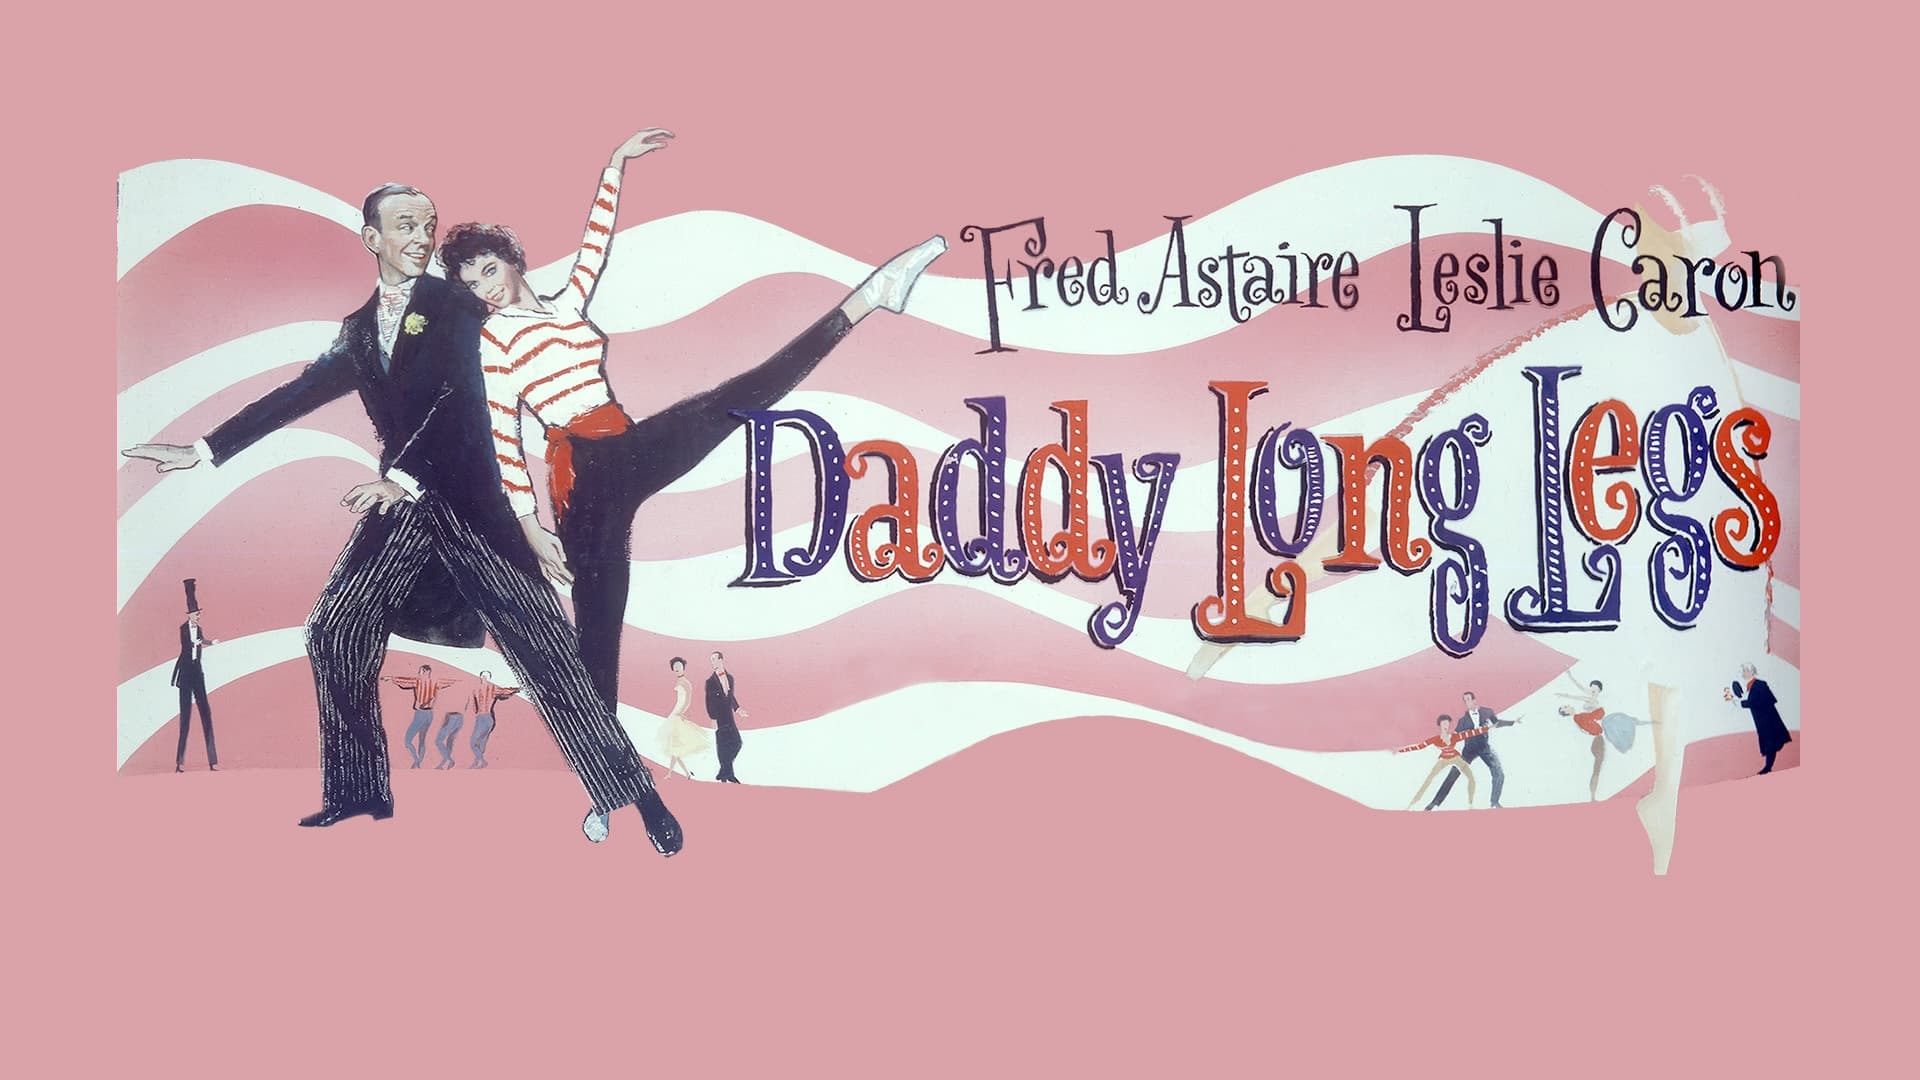 Papá piernas largas (1955)